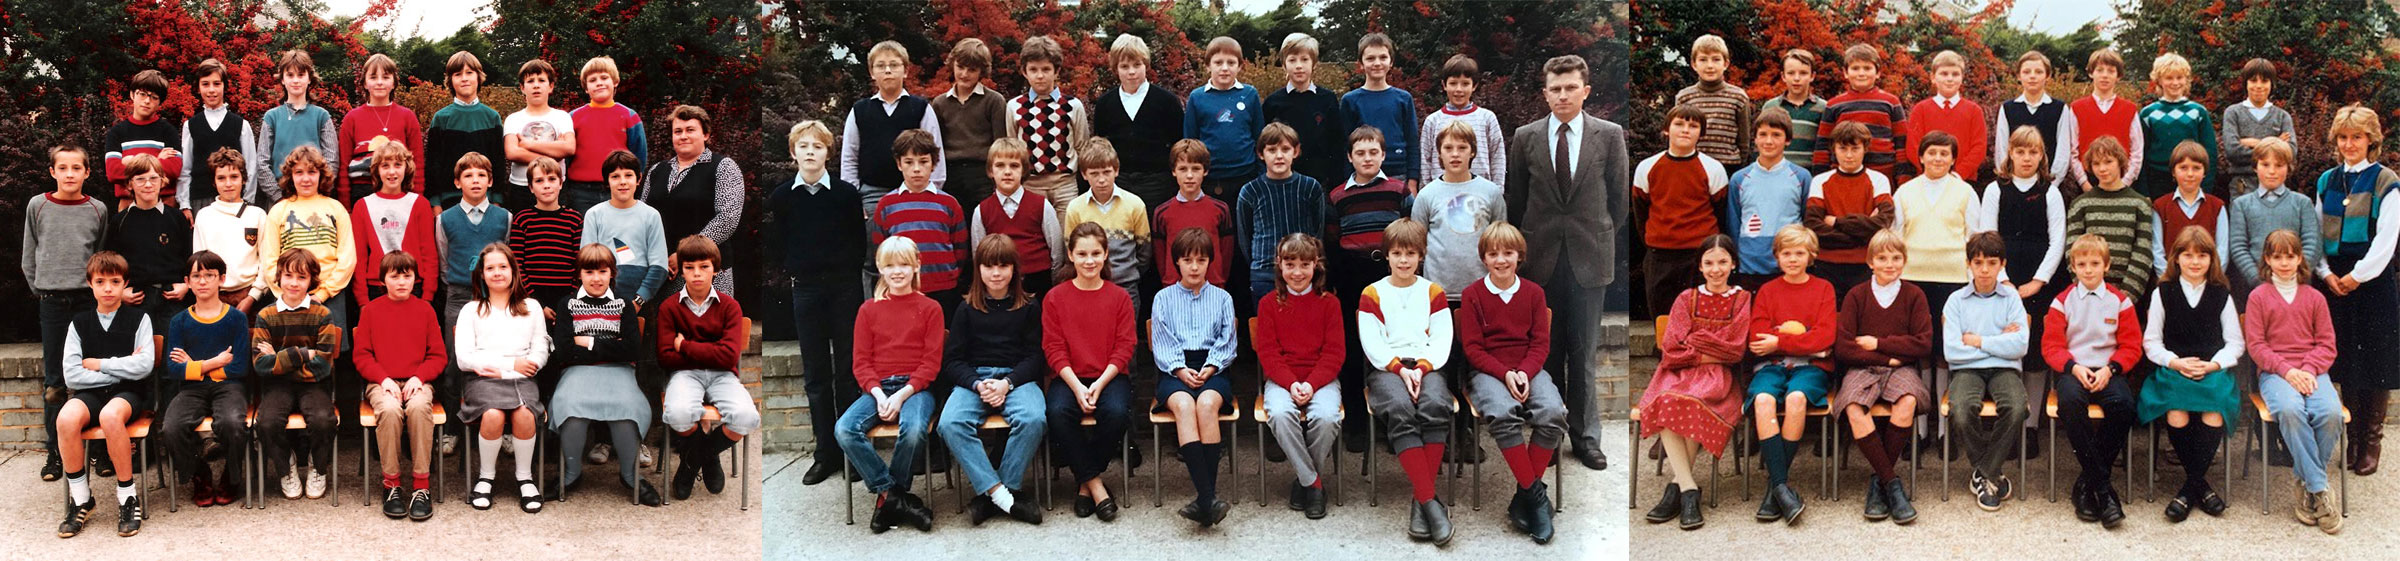 3 zesde leerjaren in 1984